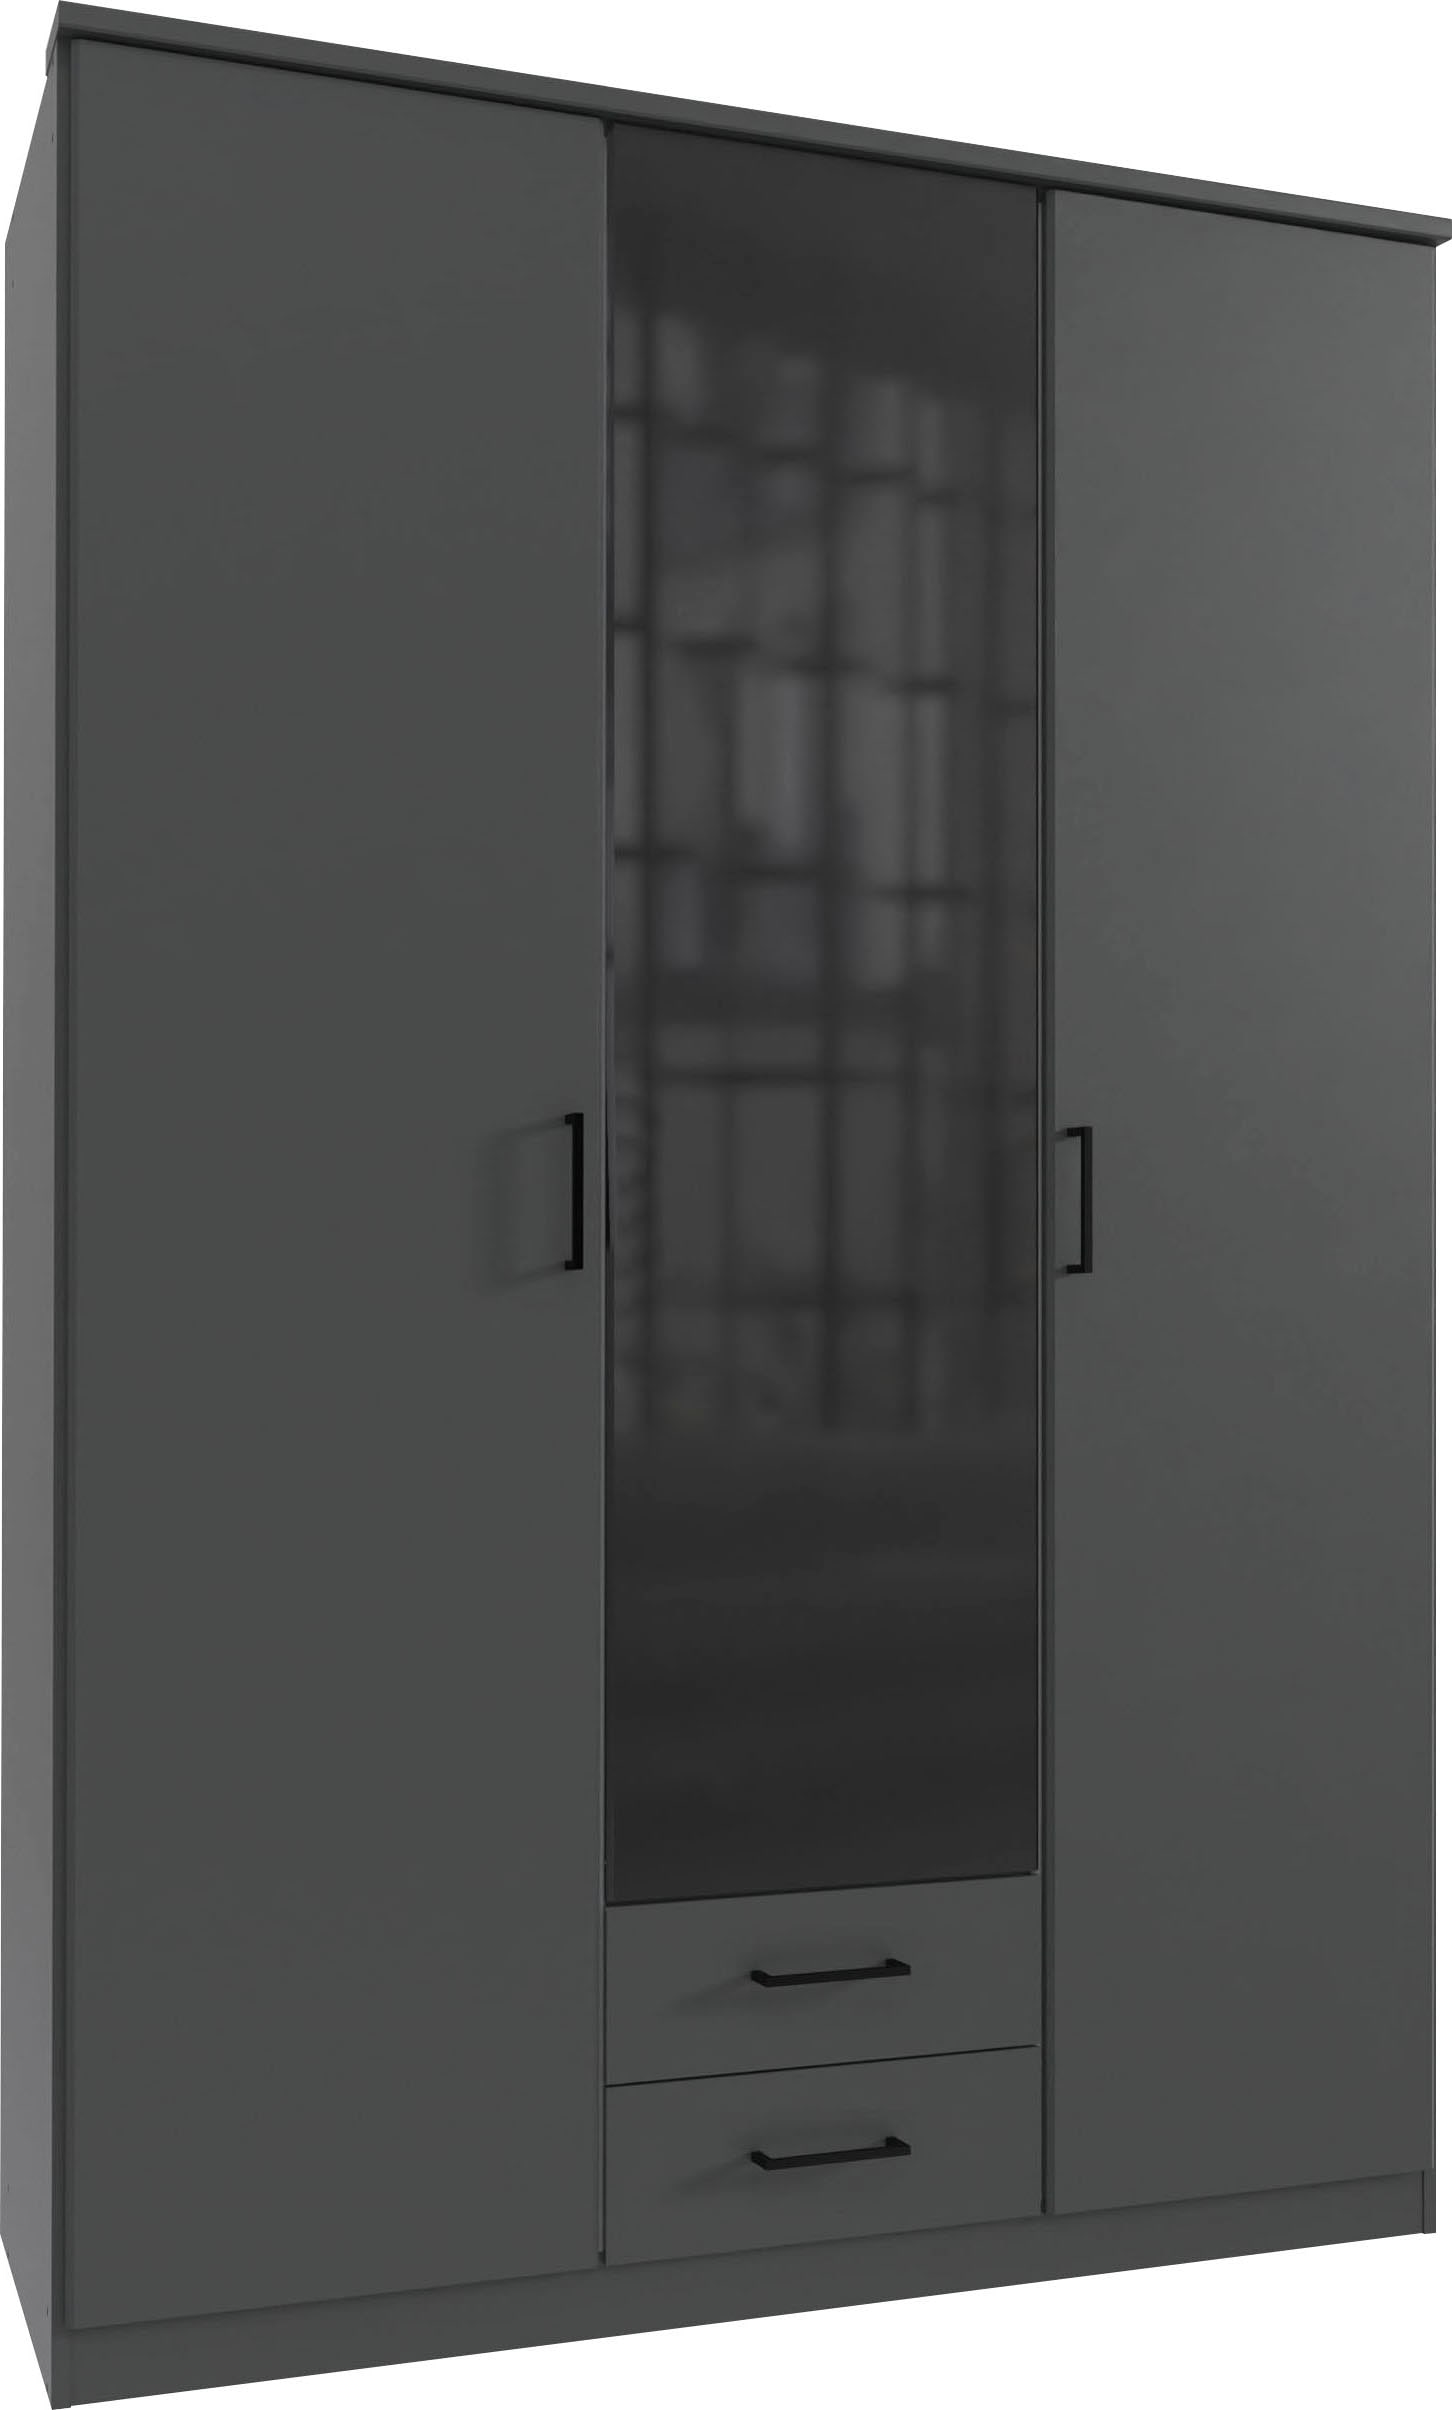 Wimex Drehtürenschrank "Soest", mit Farbglas-Tür, wahlweise 135 oder 180cm breit